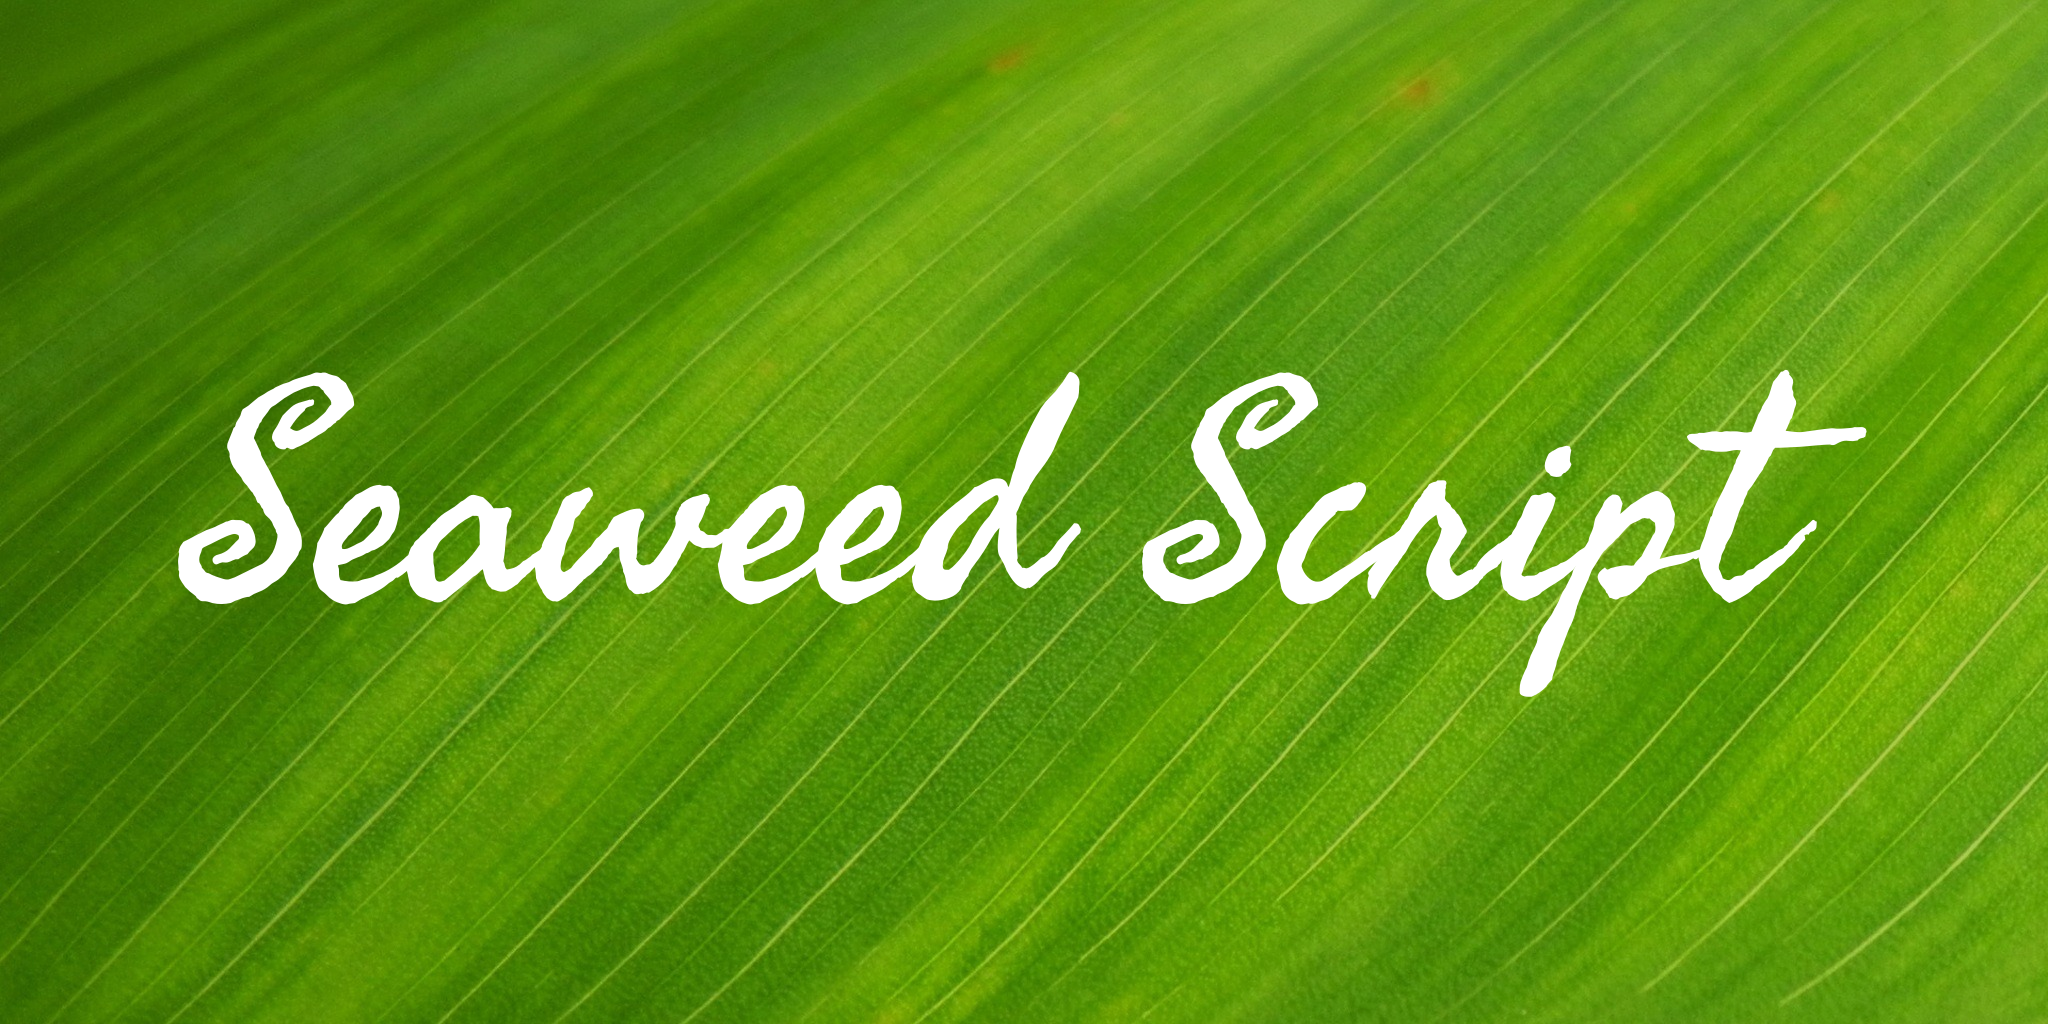 Seaweed Script